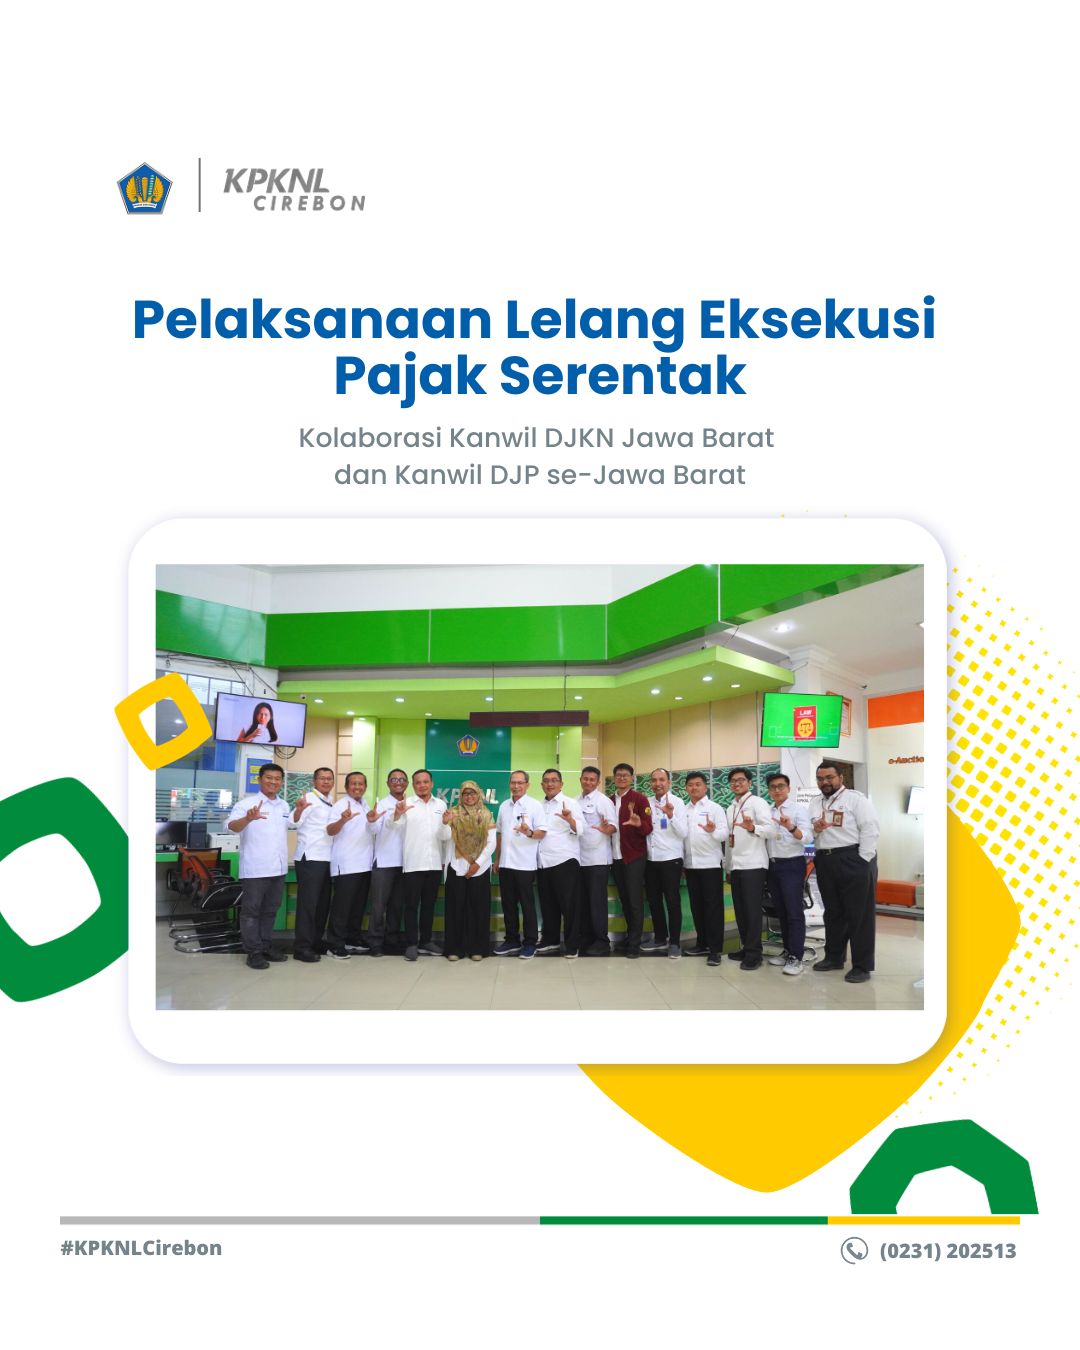 Pelaksanaan Lelang Eksekusi Pajak Serentak Kolaborasi Kanwil DJKN Jawa Barat dan Kanwil DJP se-Jawa Barat